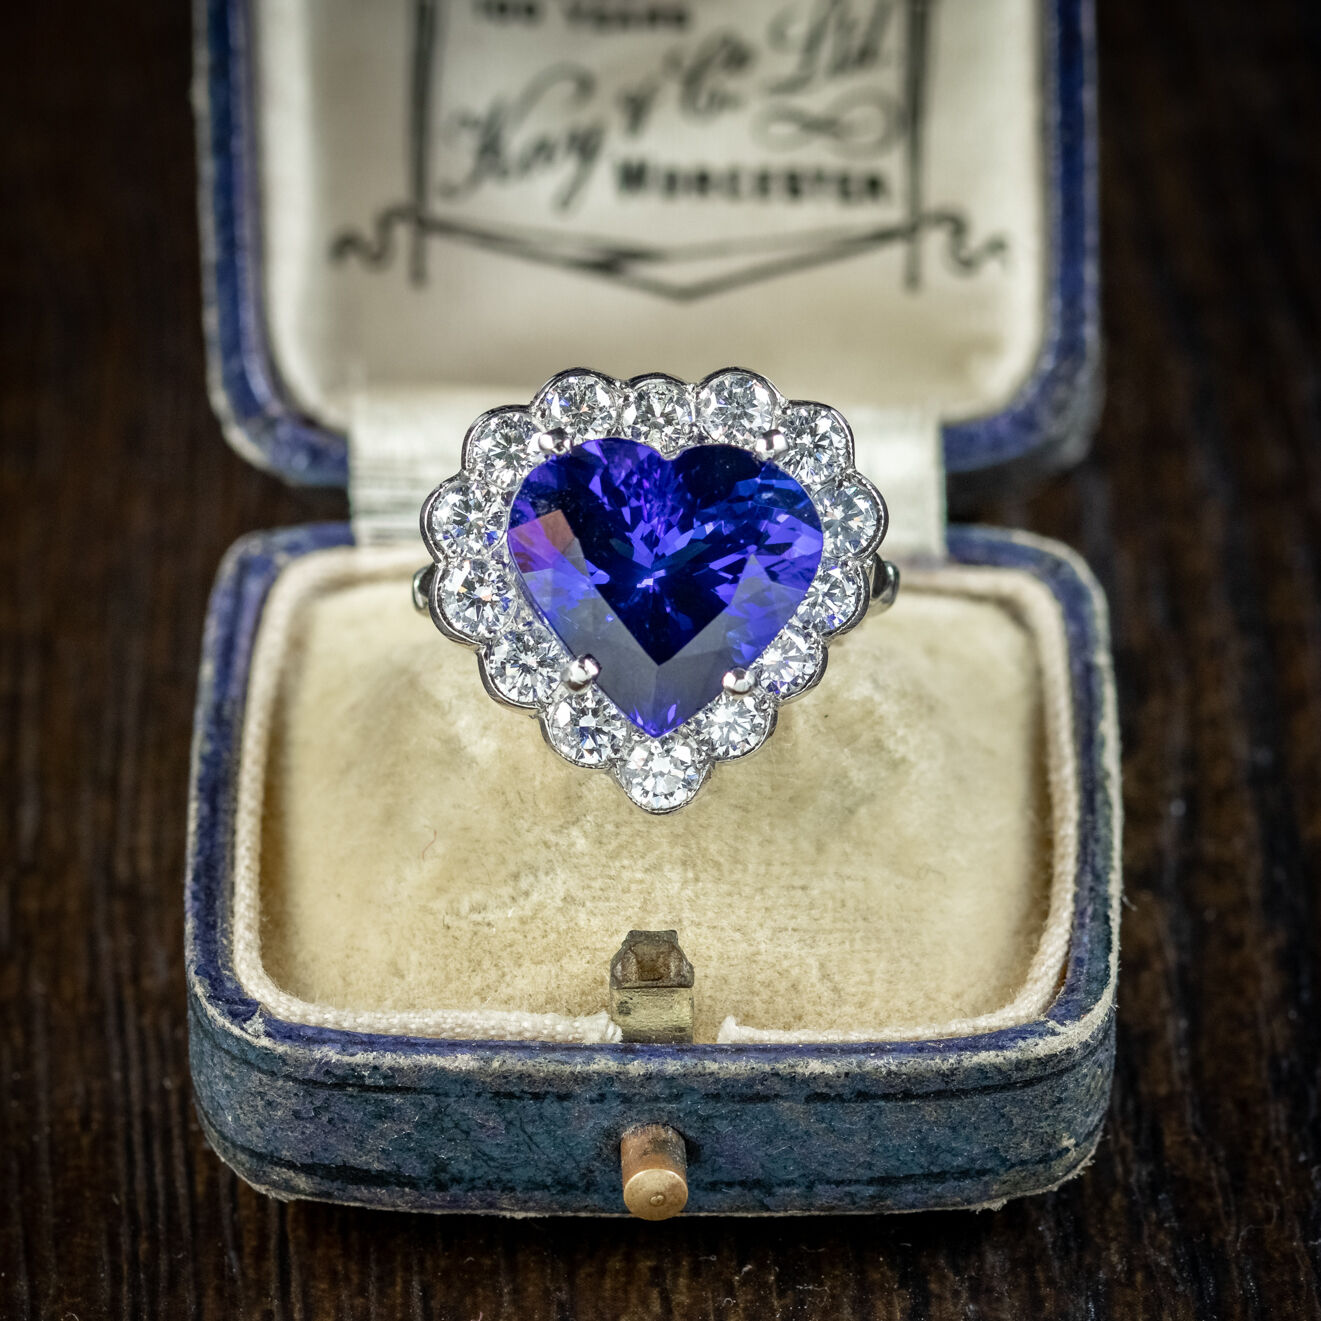 Edwardian Style Tanzanite Diamond Heart Ring 7.5ct Tanzanite